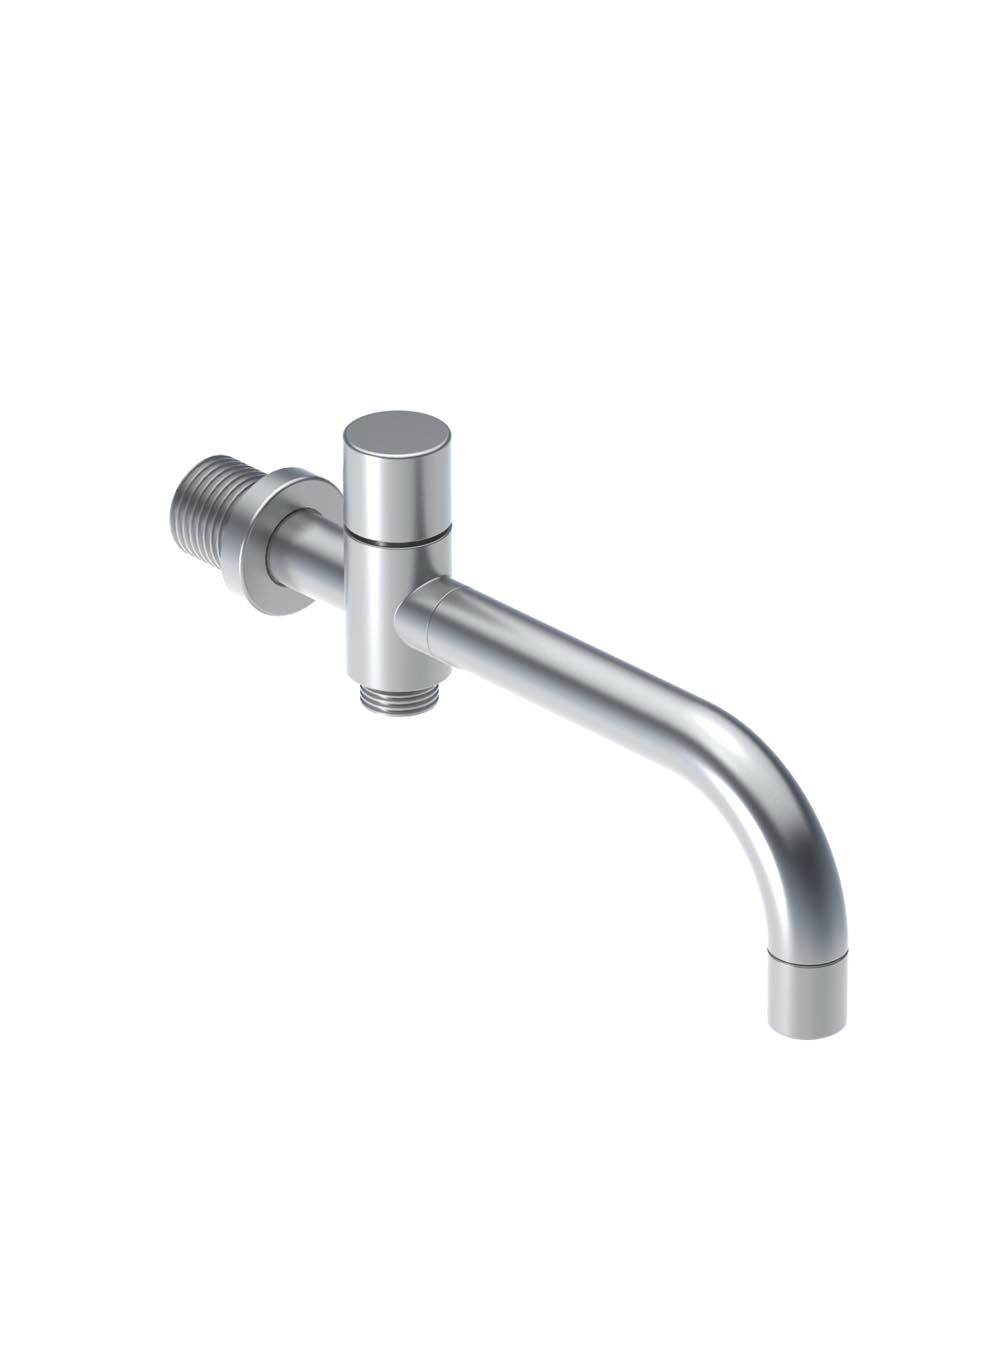 040: Bec pour bain avec inverseur (longueur 185 mm), douche à main T2 inclus (diamètre du bec 19 mm).